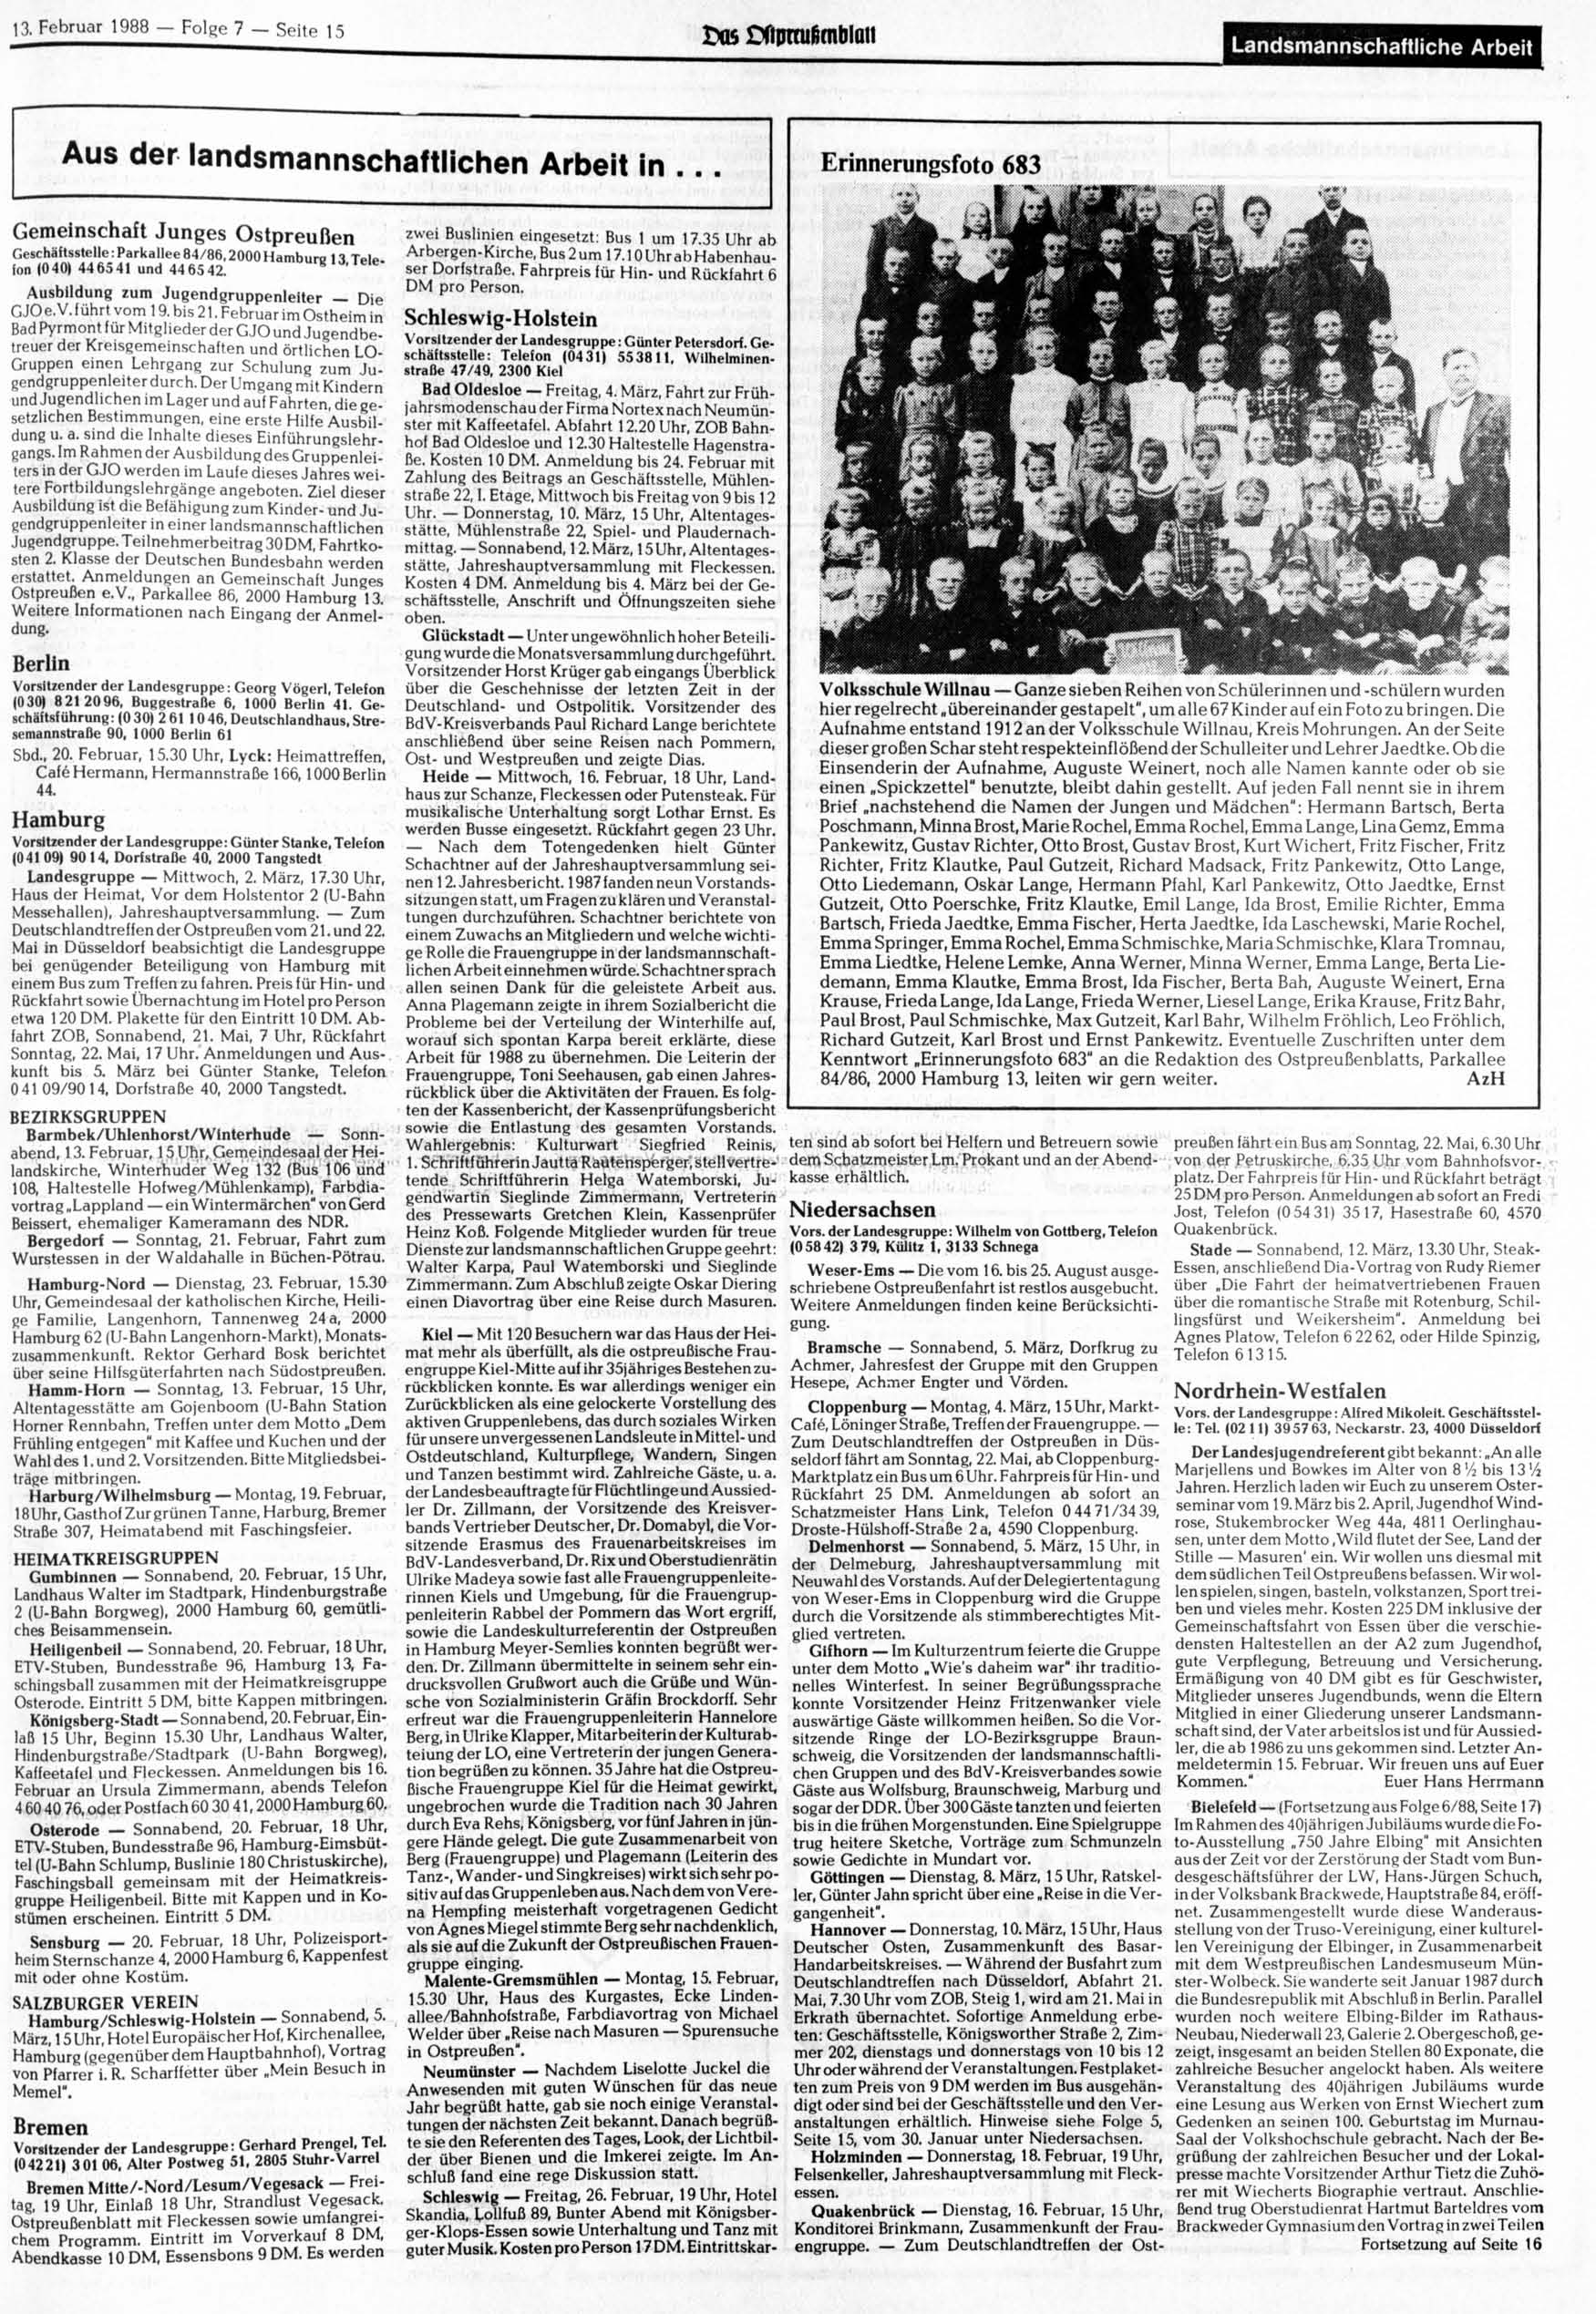 13. Februar 1988 - Folge 7 - Seite 15 ^60101011 Landsmannschaftliche Arbeit Aus der landsmannschaftlichen Arbeit in.